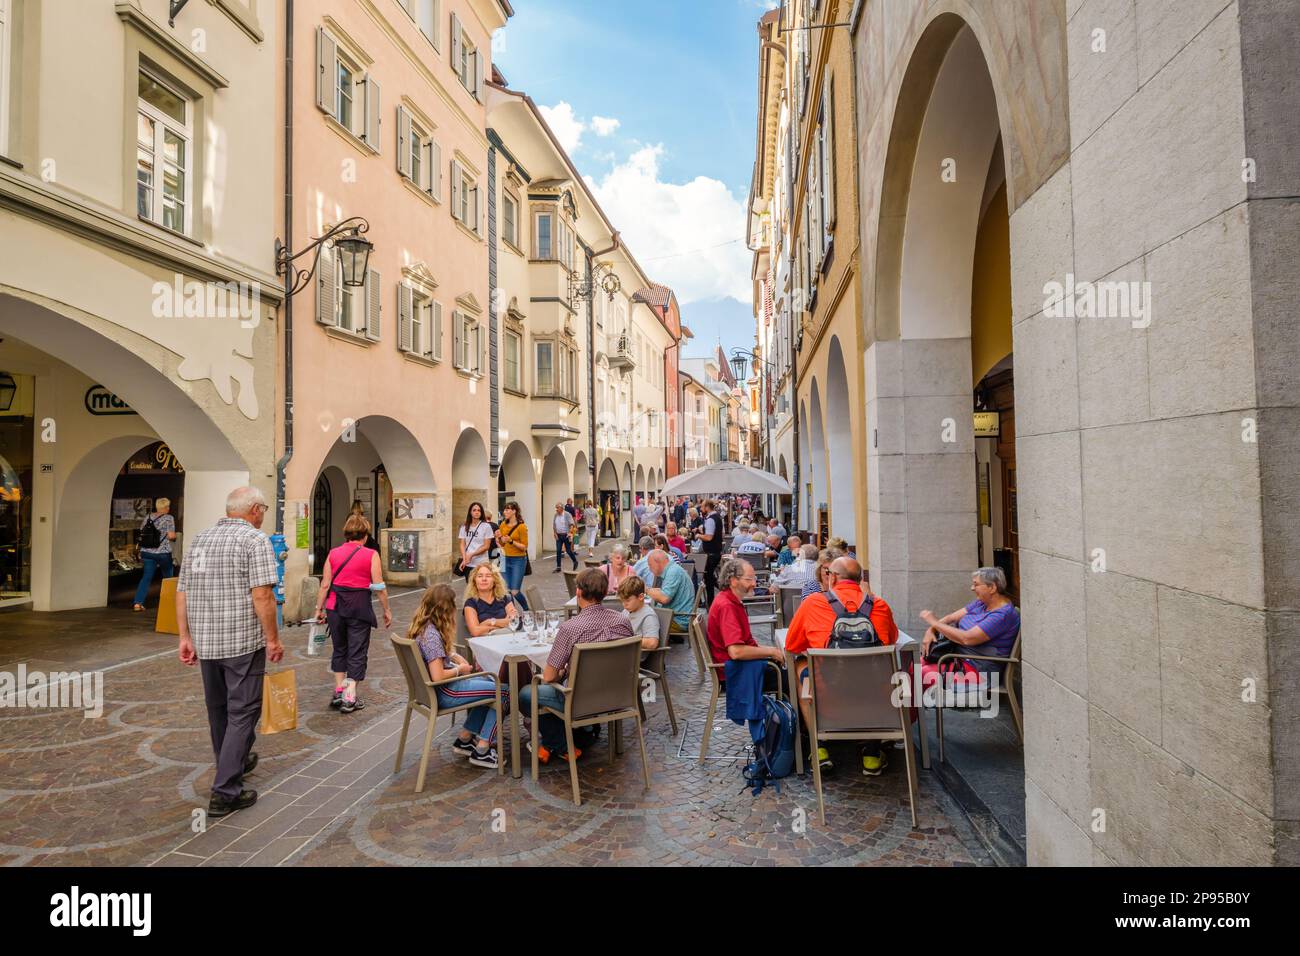 Merano, Italien - 27. September 2021: Die Altstadt von Merano ist bei Touristen beliebt und in diesem Spätsommerurlaub vor Aufregung belebt. Stockfoto